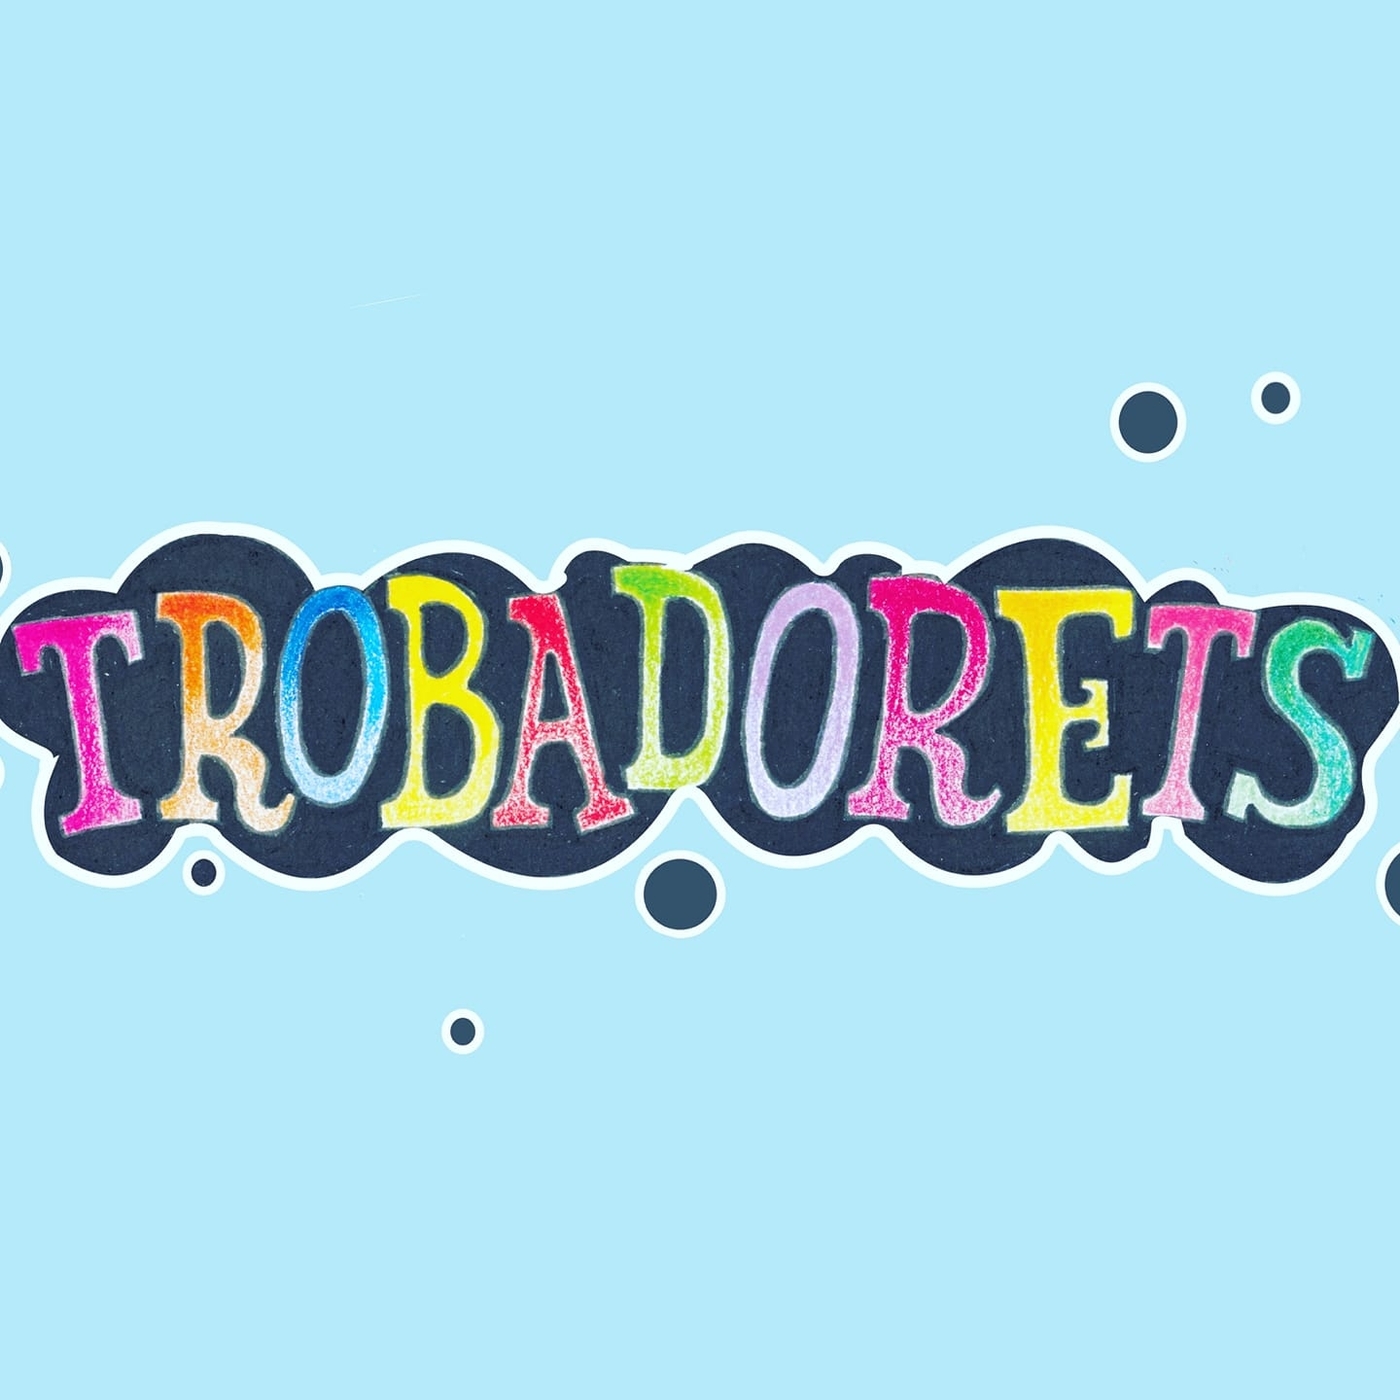 Trobadorets | musica en valencià